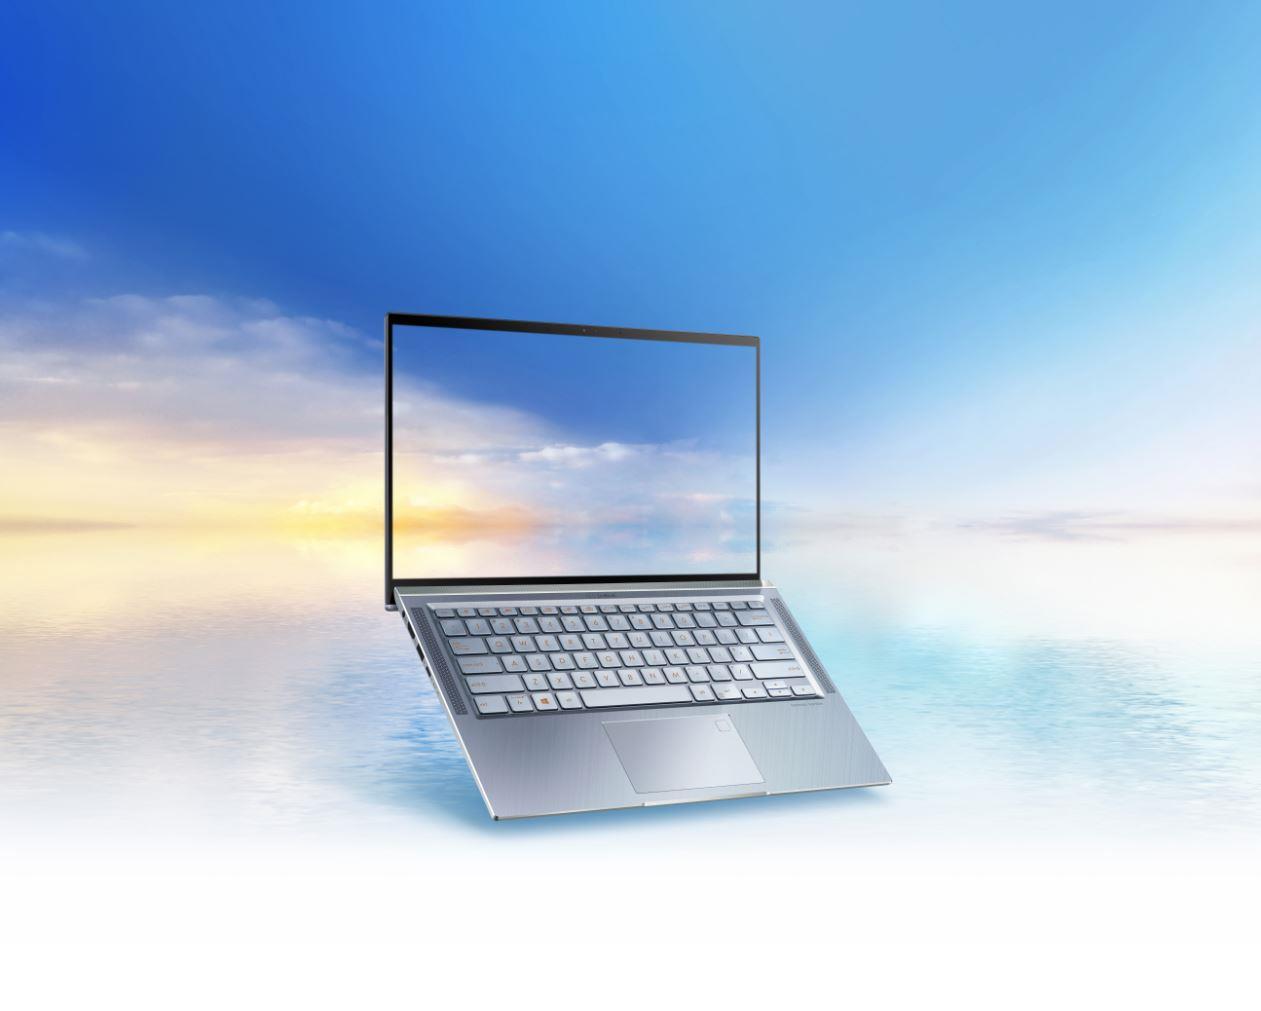 ASUS ra mắt ZenBook 14 UX431, sở hữu viền mỏng và trang bị 4 loa Harman Kardon